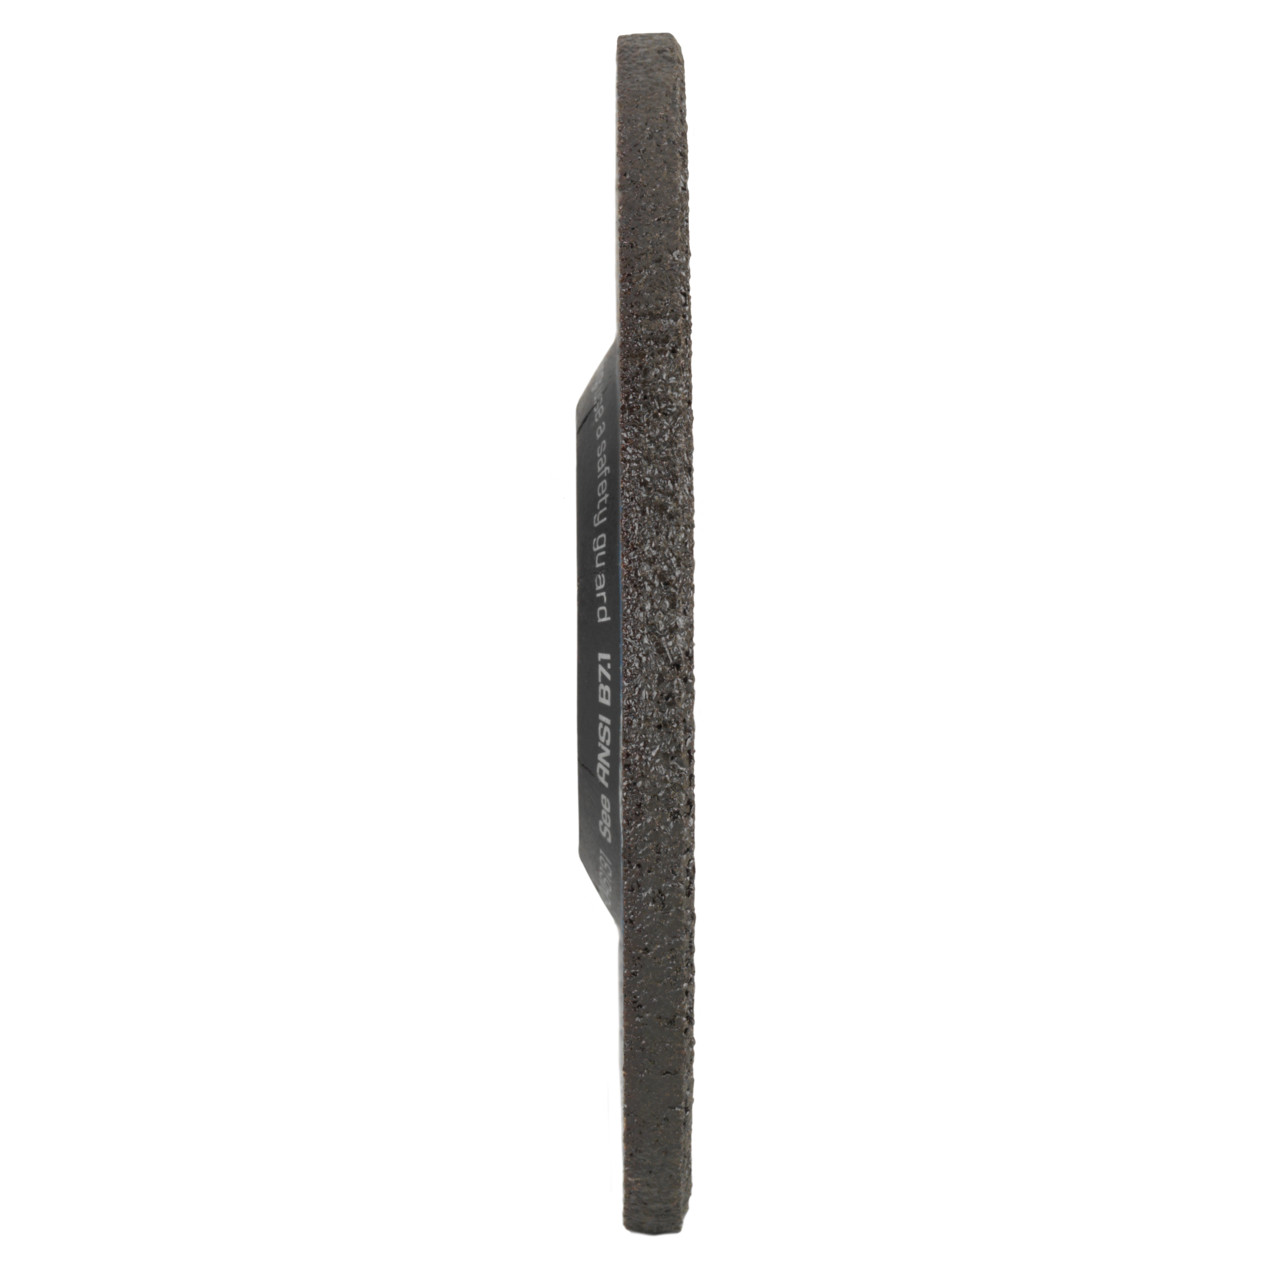 Tyrolit Voorslijpschijf DxUxH 75x6x9,5 2in1 voor staal en roestvast staal, vorm: 27 - offset uitvoering, Art. 5270